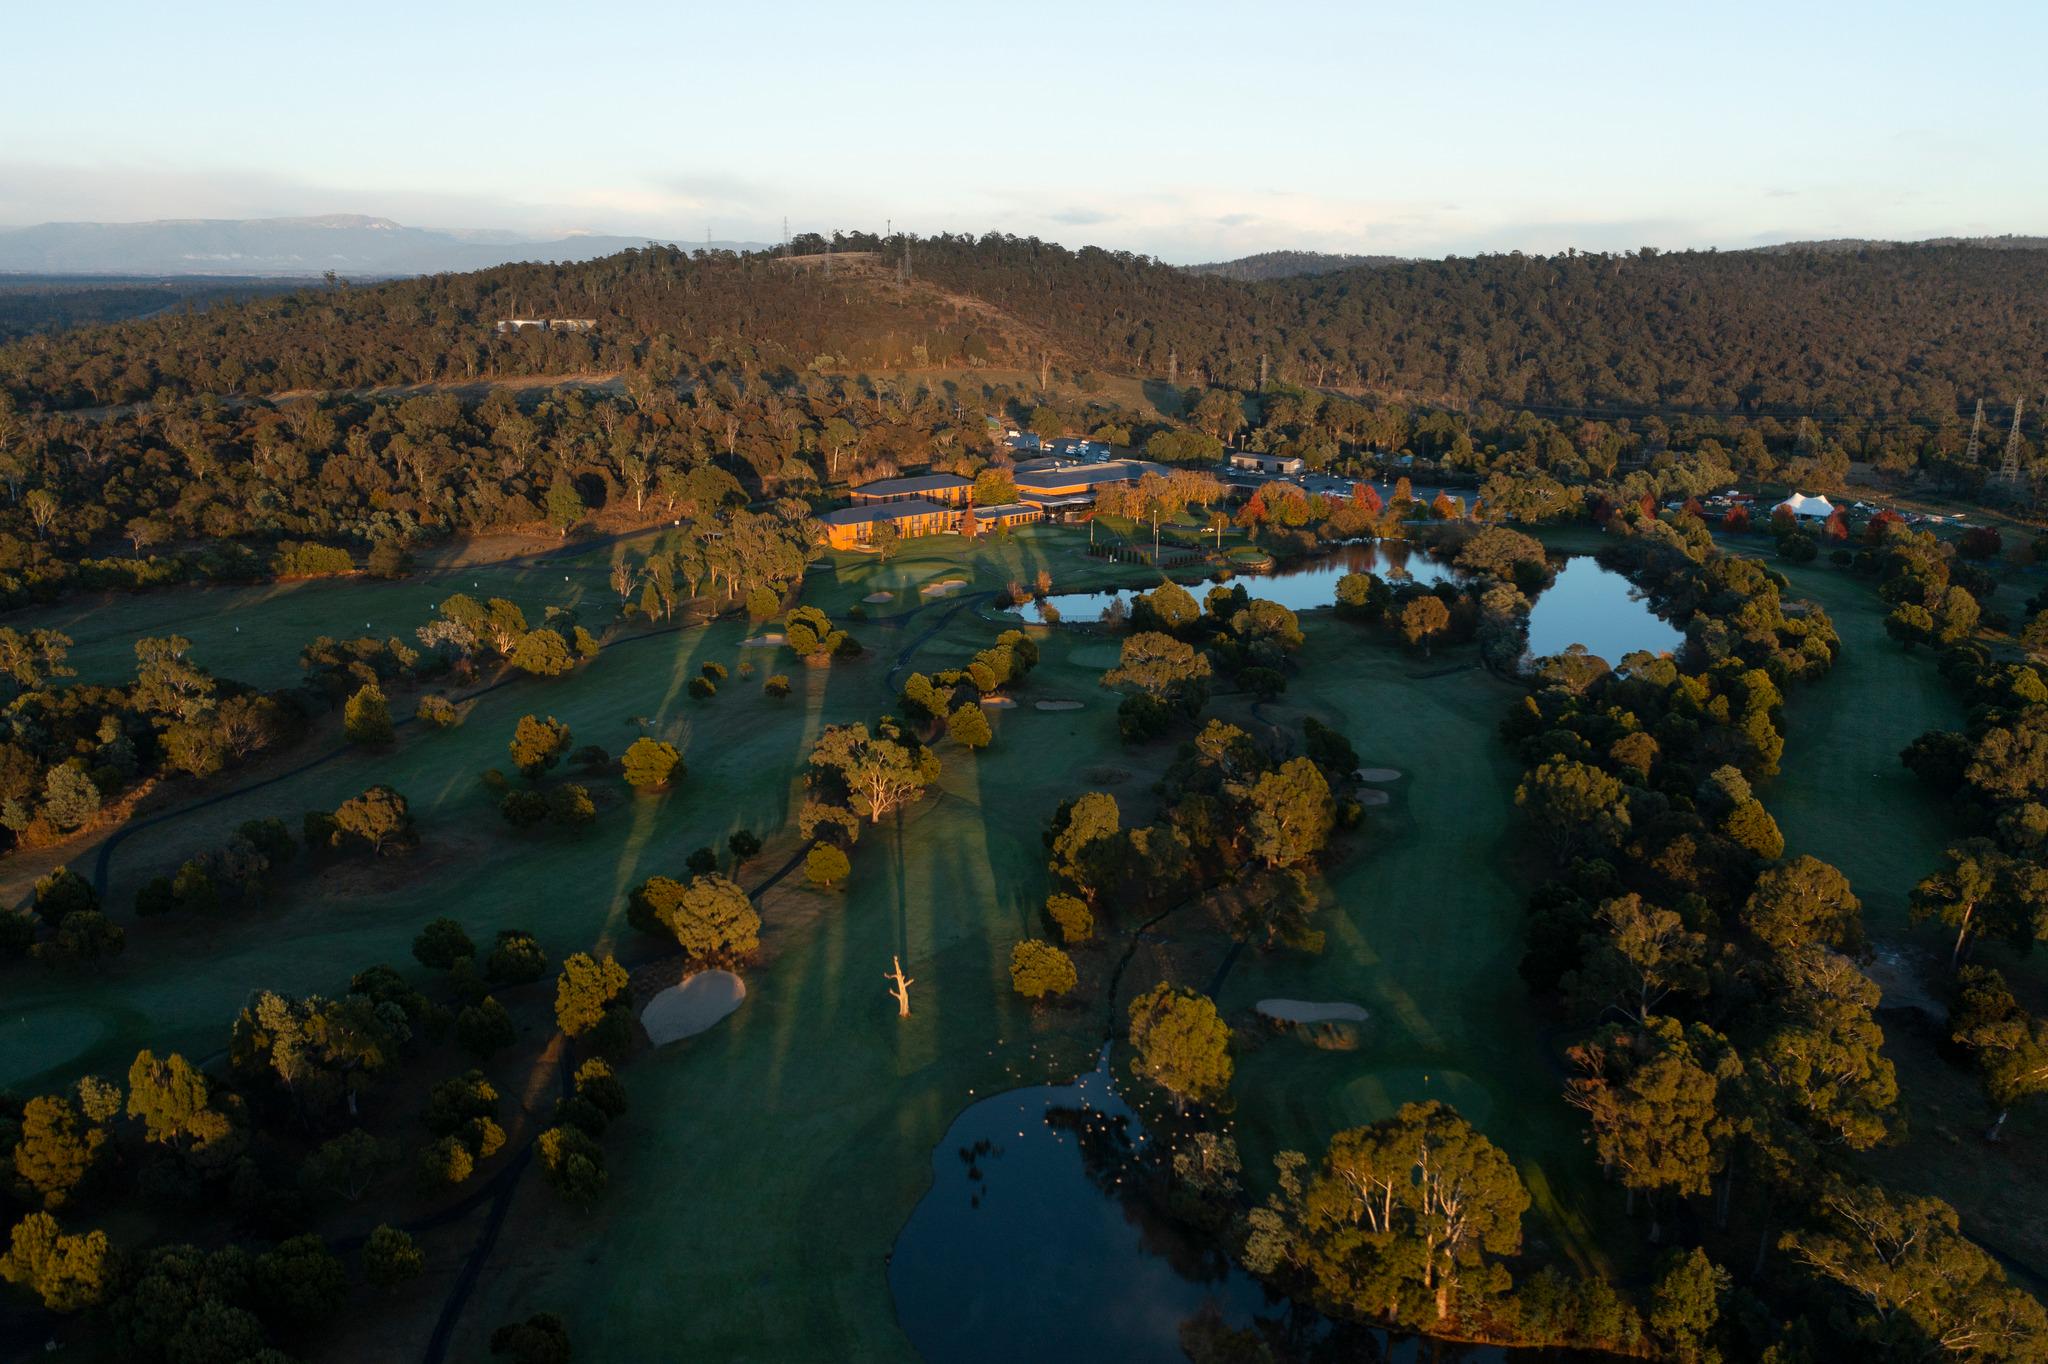 Country Club Tasmania